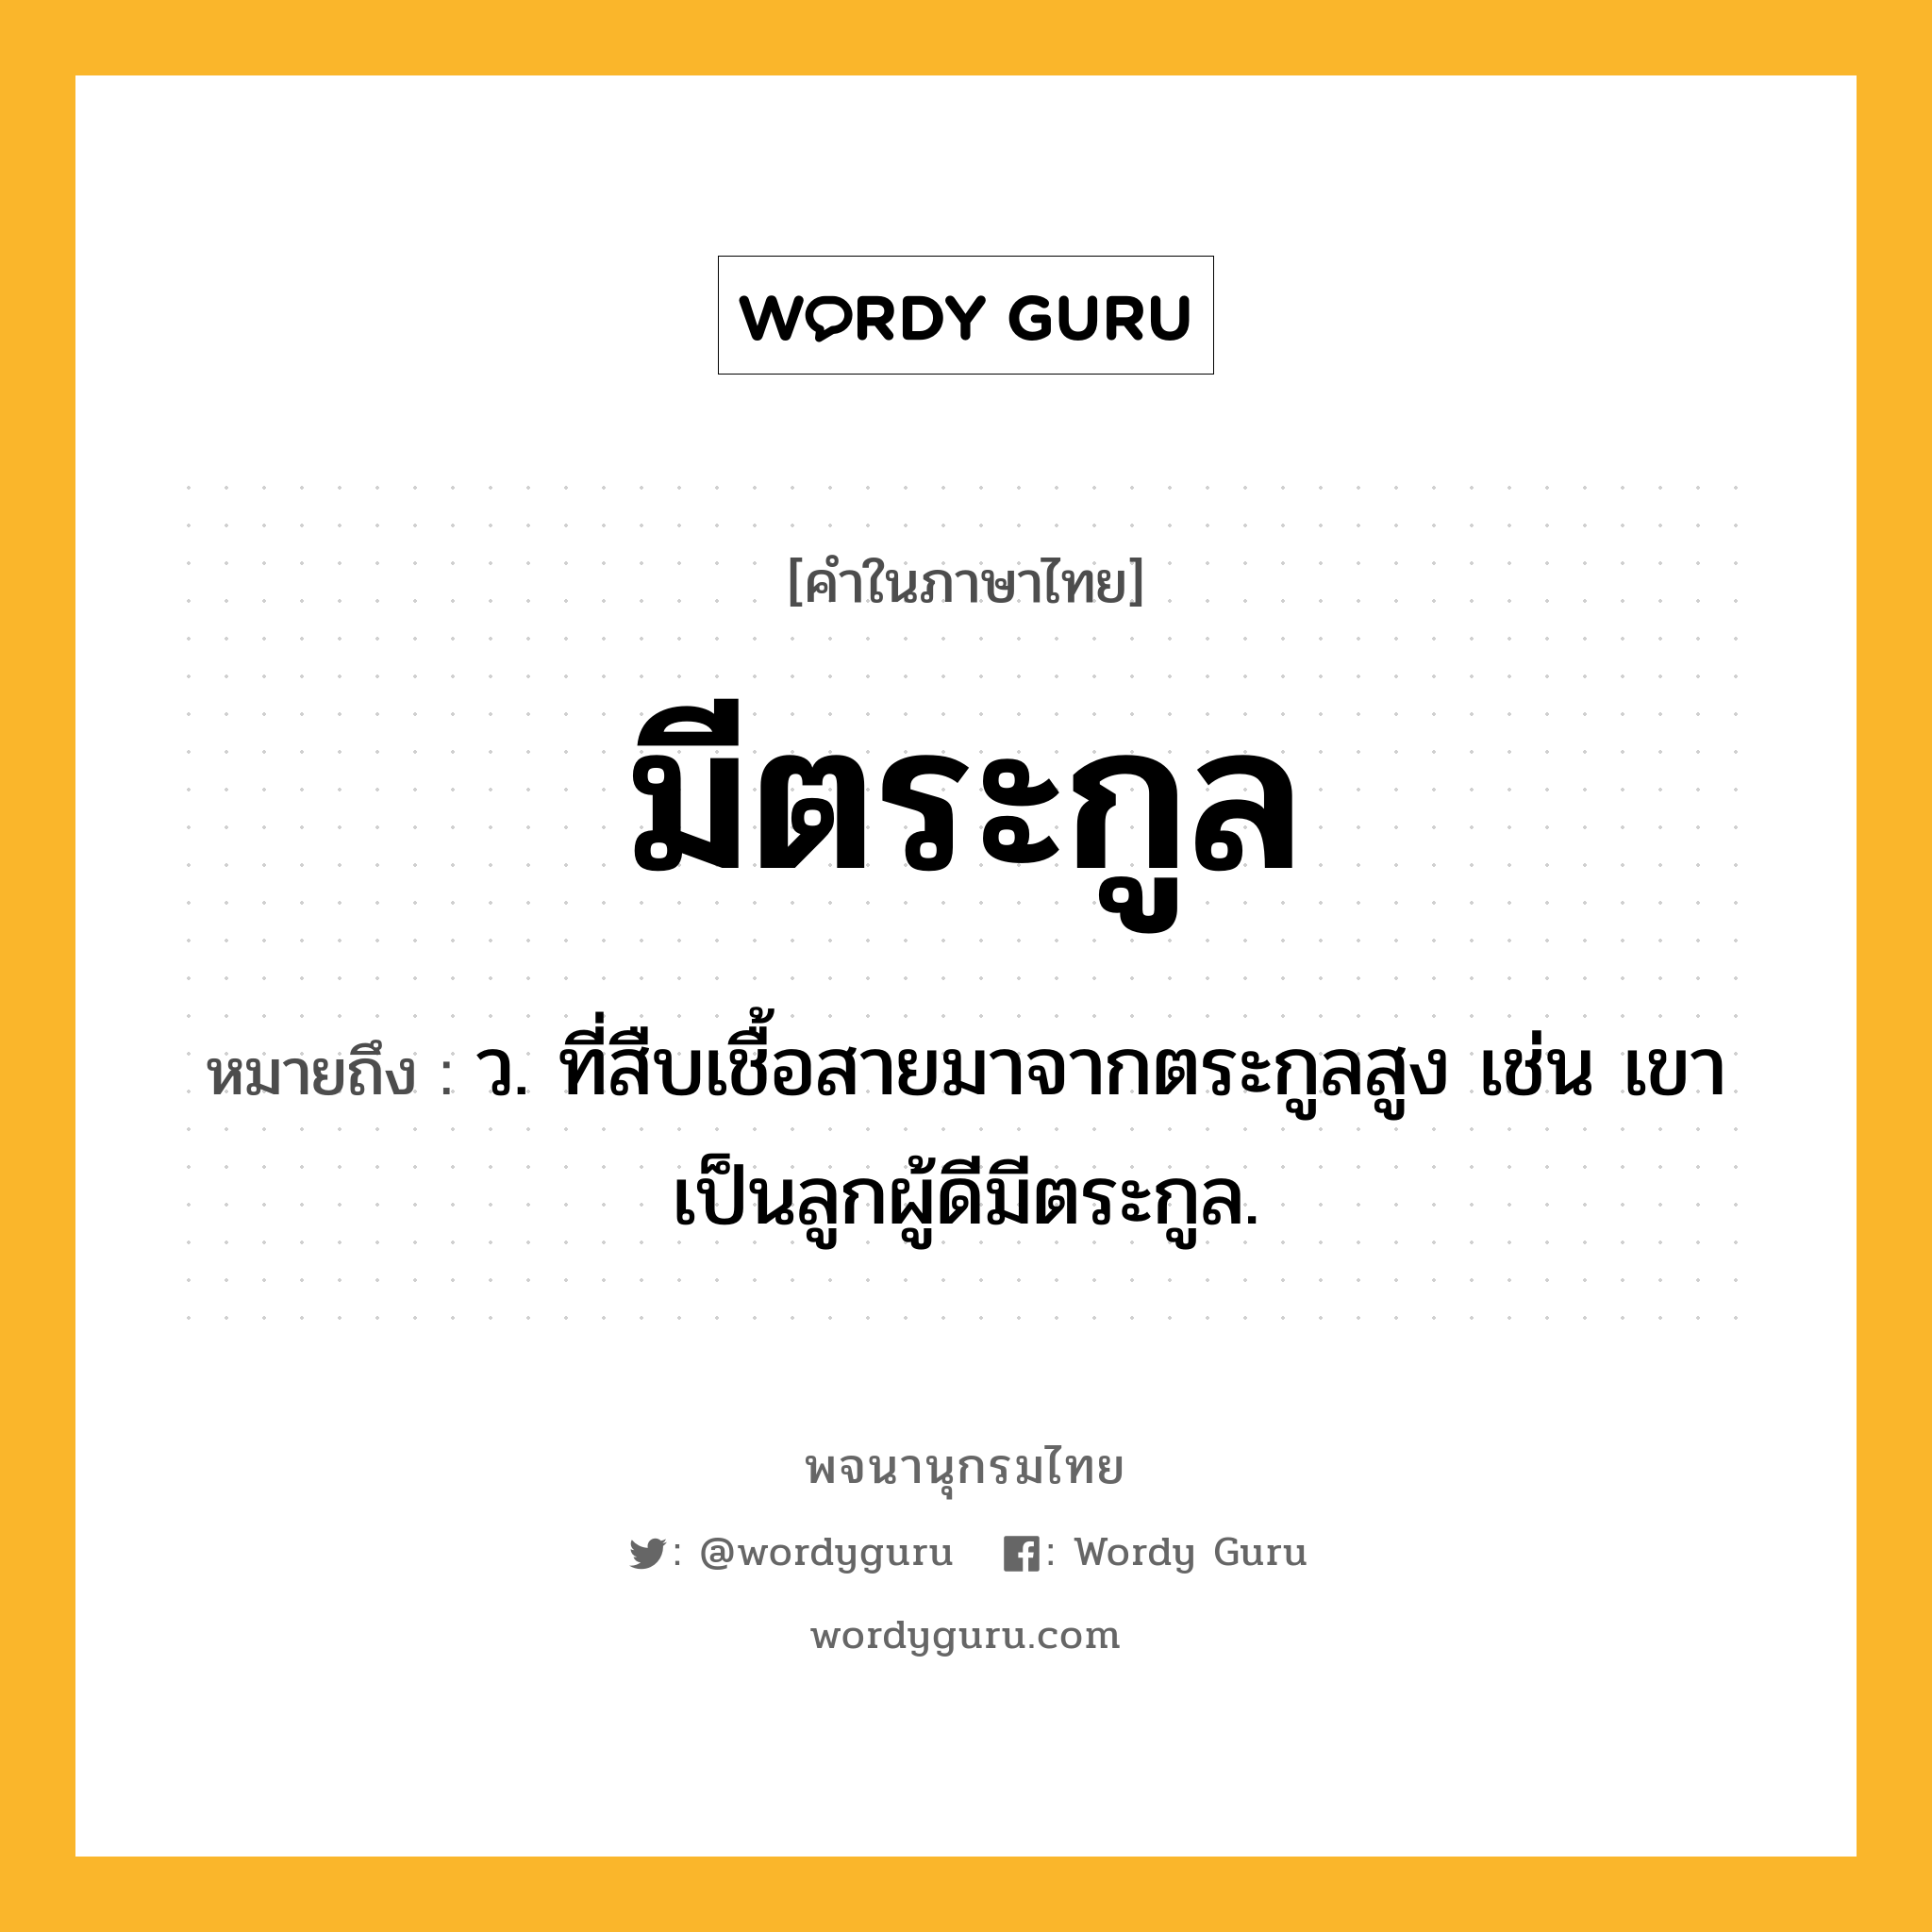 มีตระกูล ความหมาย หมายถึงอะไร?, คำในภาษาไทย มีตระกูล หมายถึง ว. ที่สืบเชื้อสายมาจากตระกูลสูง เช่น เขาเป็นลูกผู้ดีมีตระกูล.